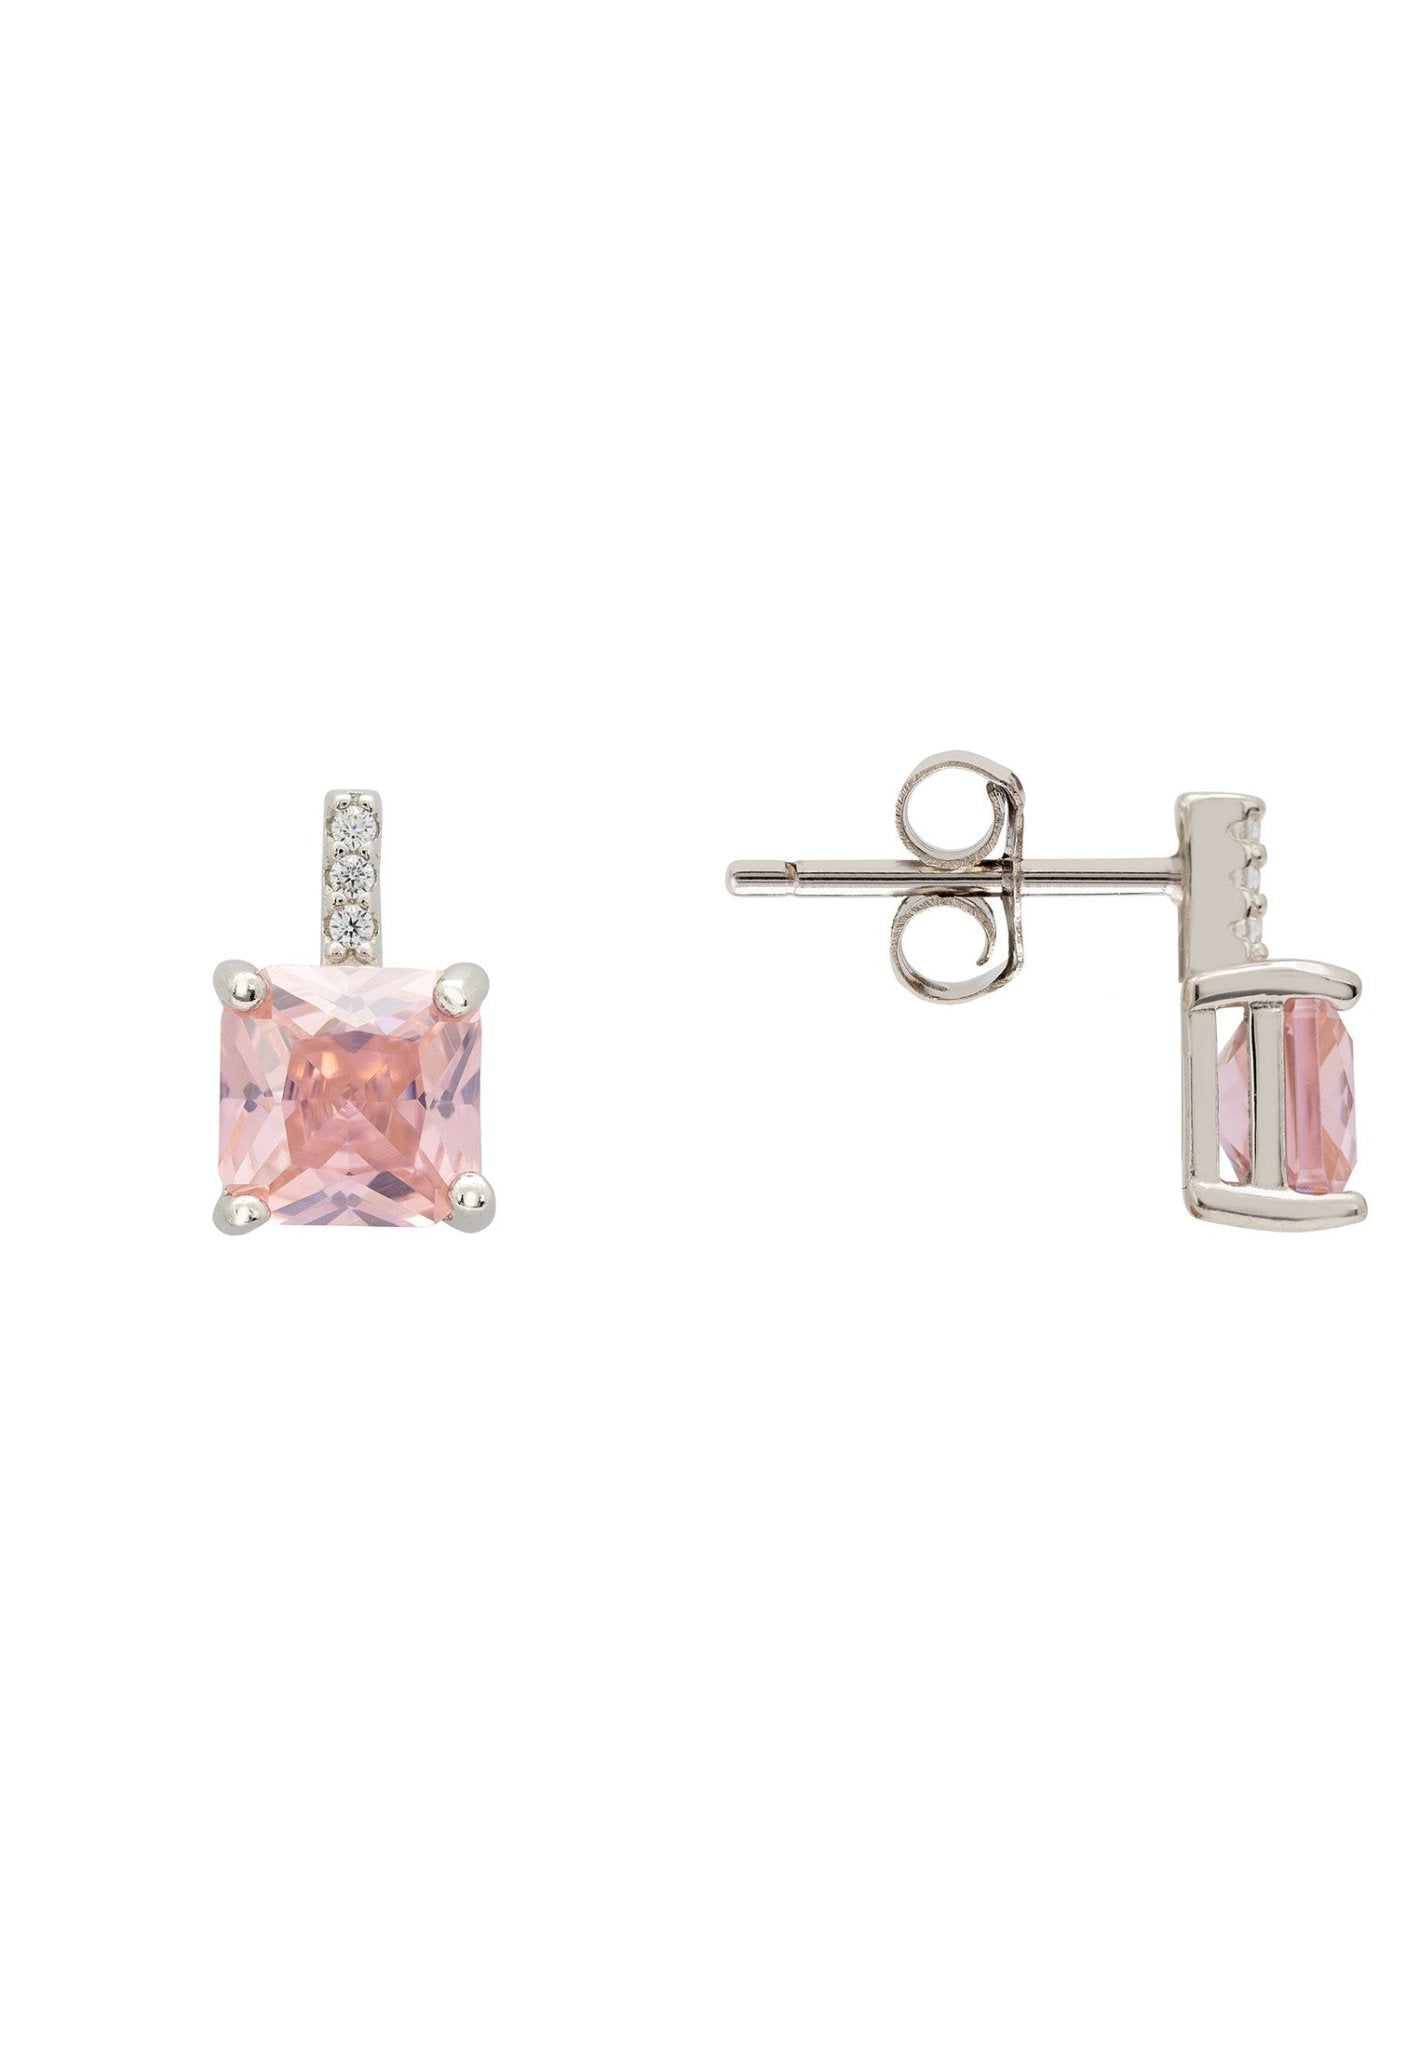 Aria Crystal Stud Earrings Morganite Pink Silver - LATELITA Earrings